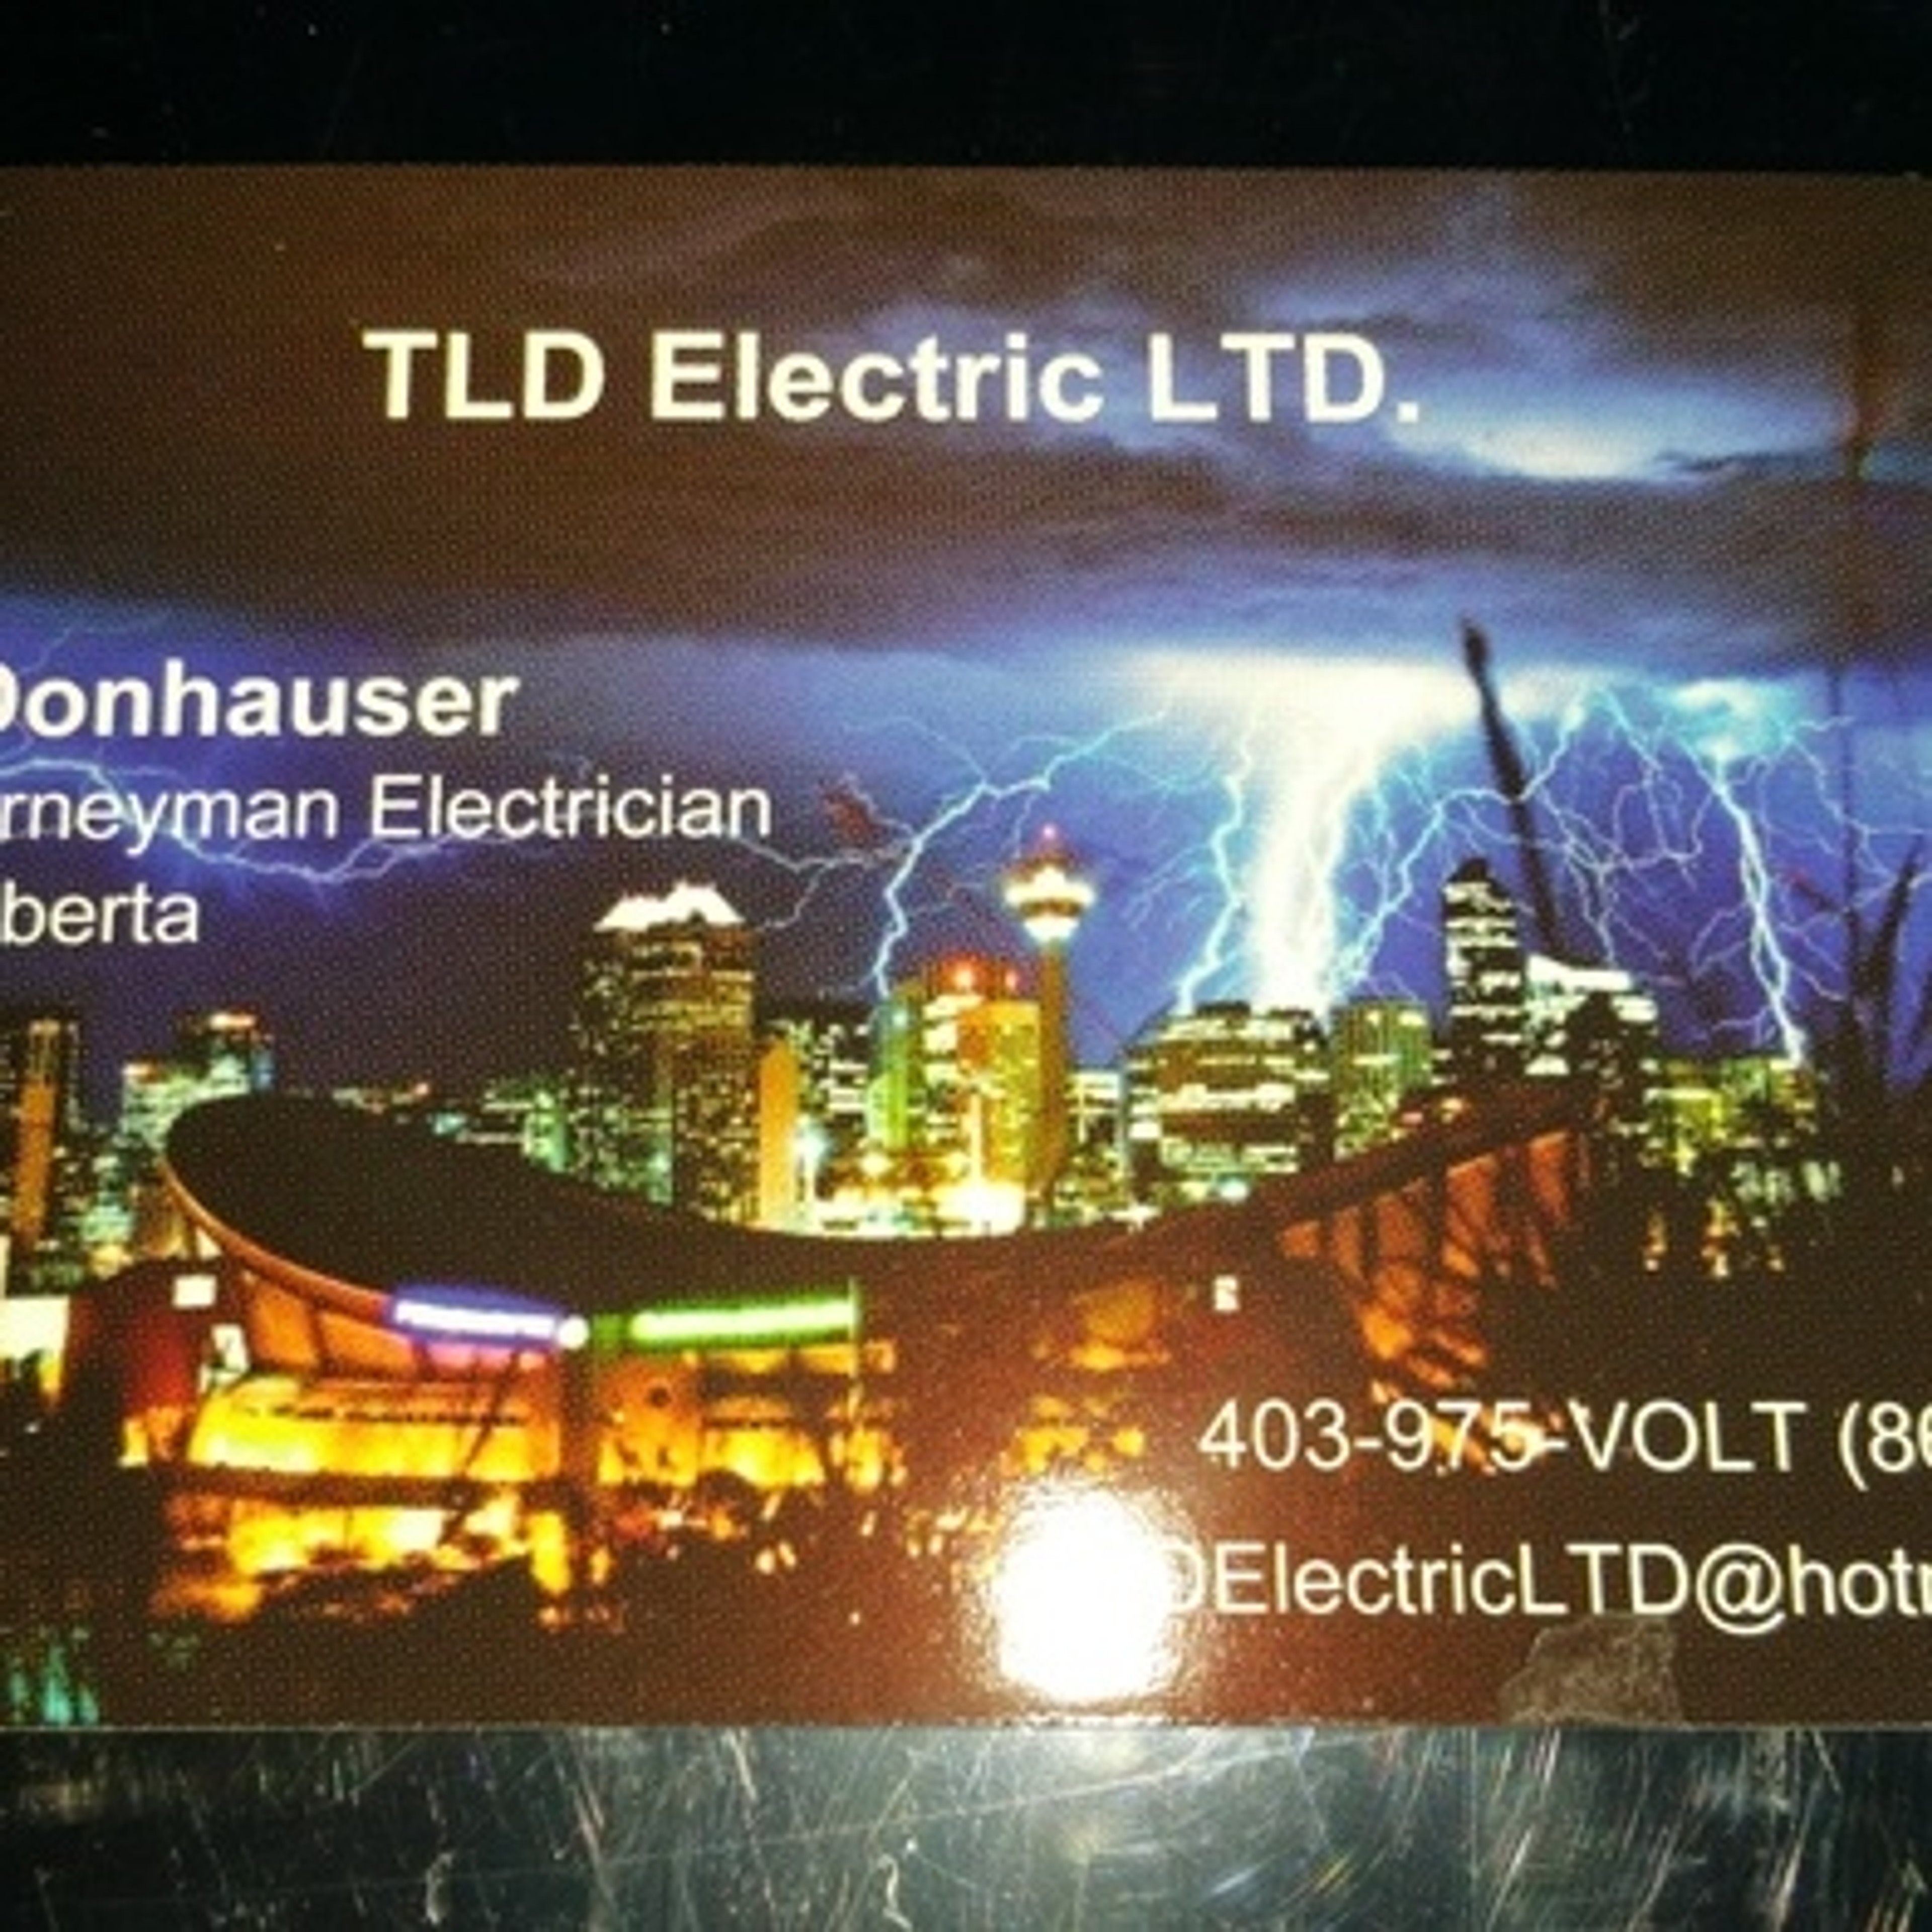 TLD Electric LTD